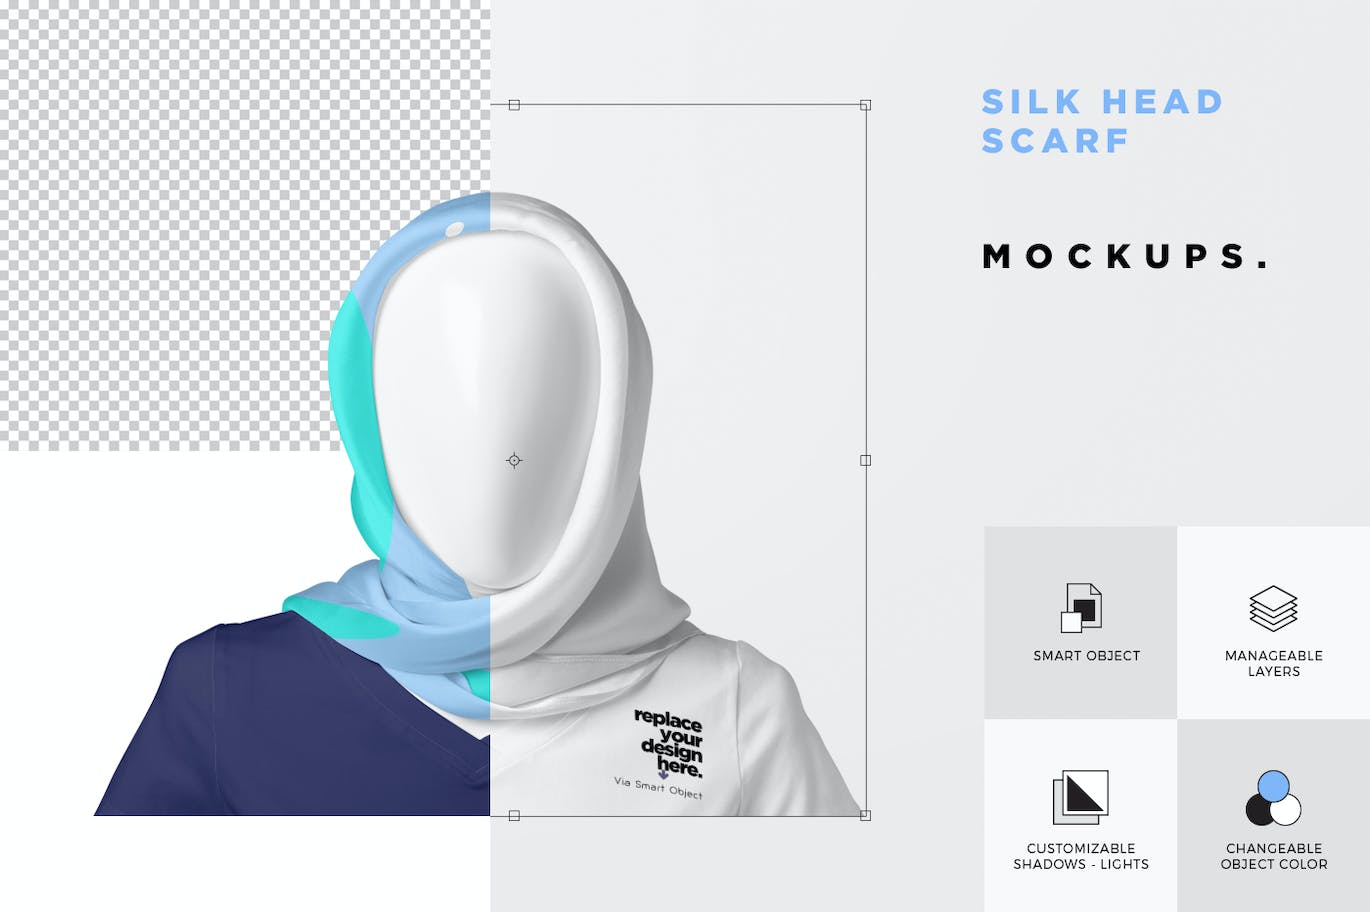 丝绸头巾面料品牌设计样机 Silk Head Scarf Mockups 样机素材 第6张